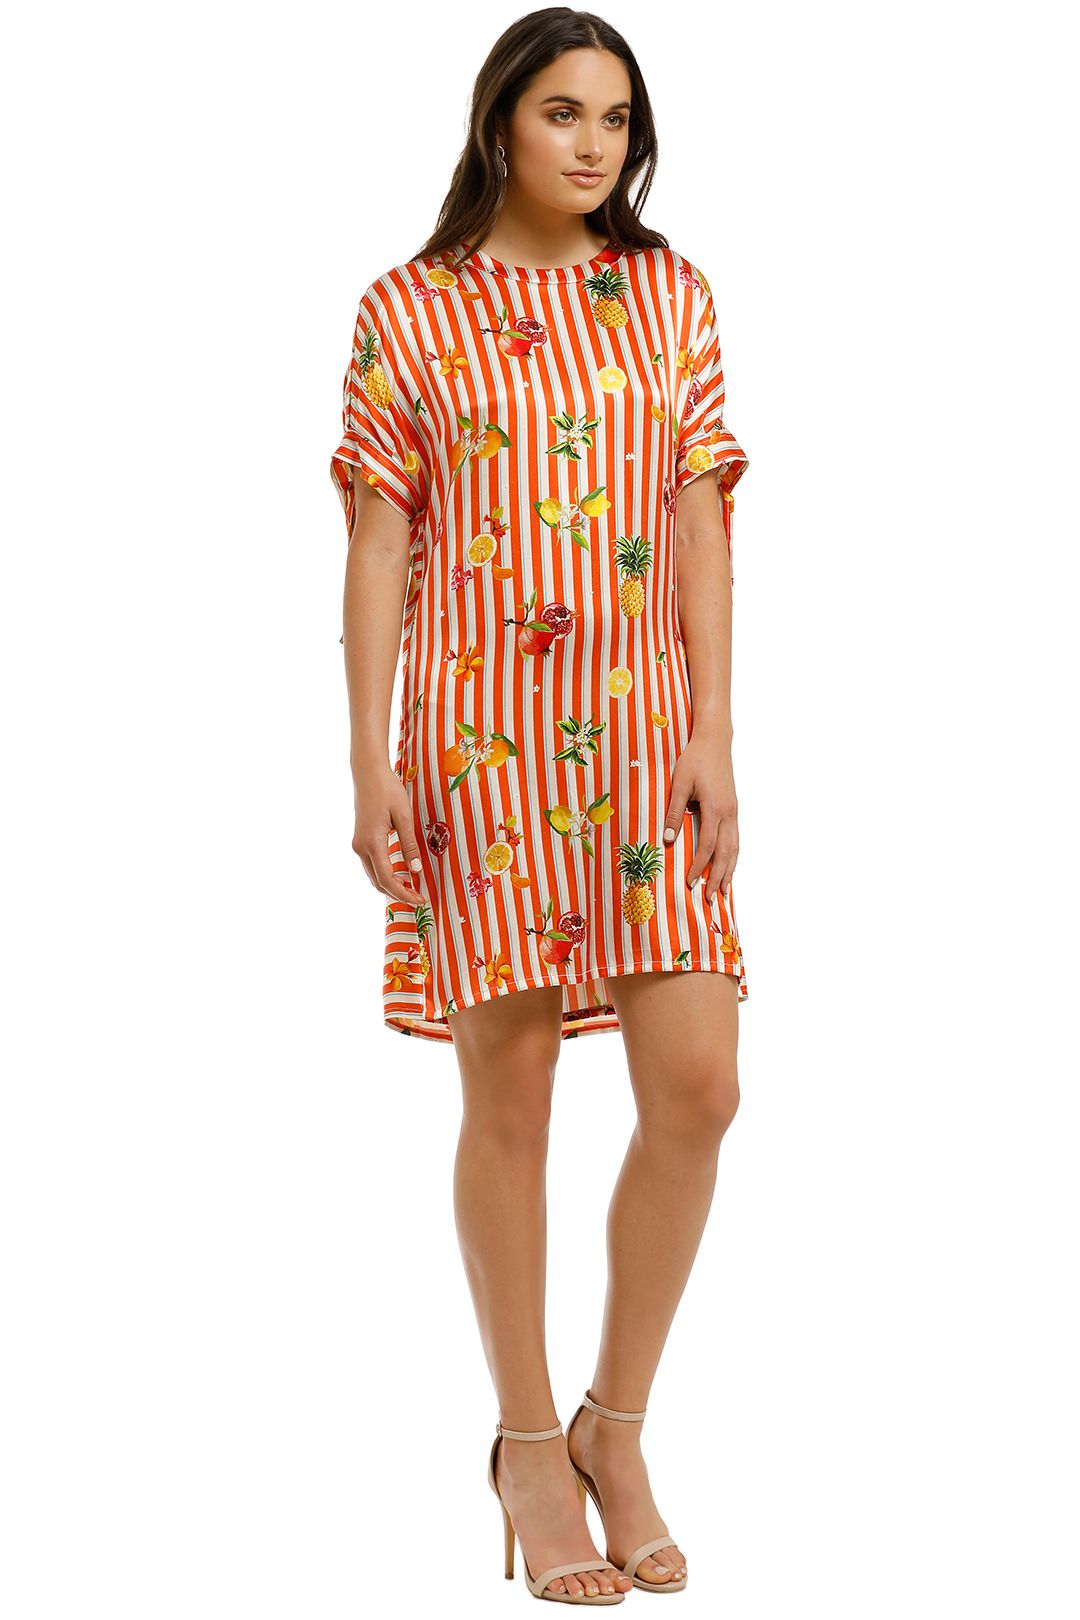 Cooper-By-Trelise-Cooper-Sunset-Shift-Dress-Orange-Stripe-Side